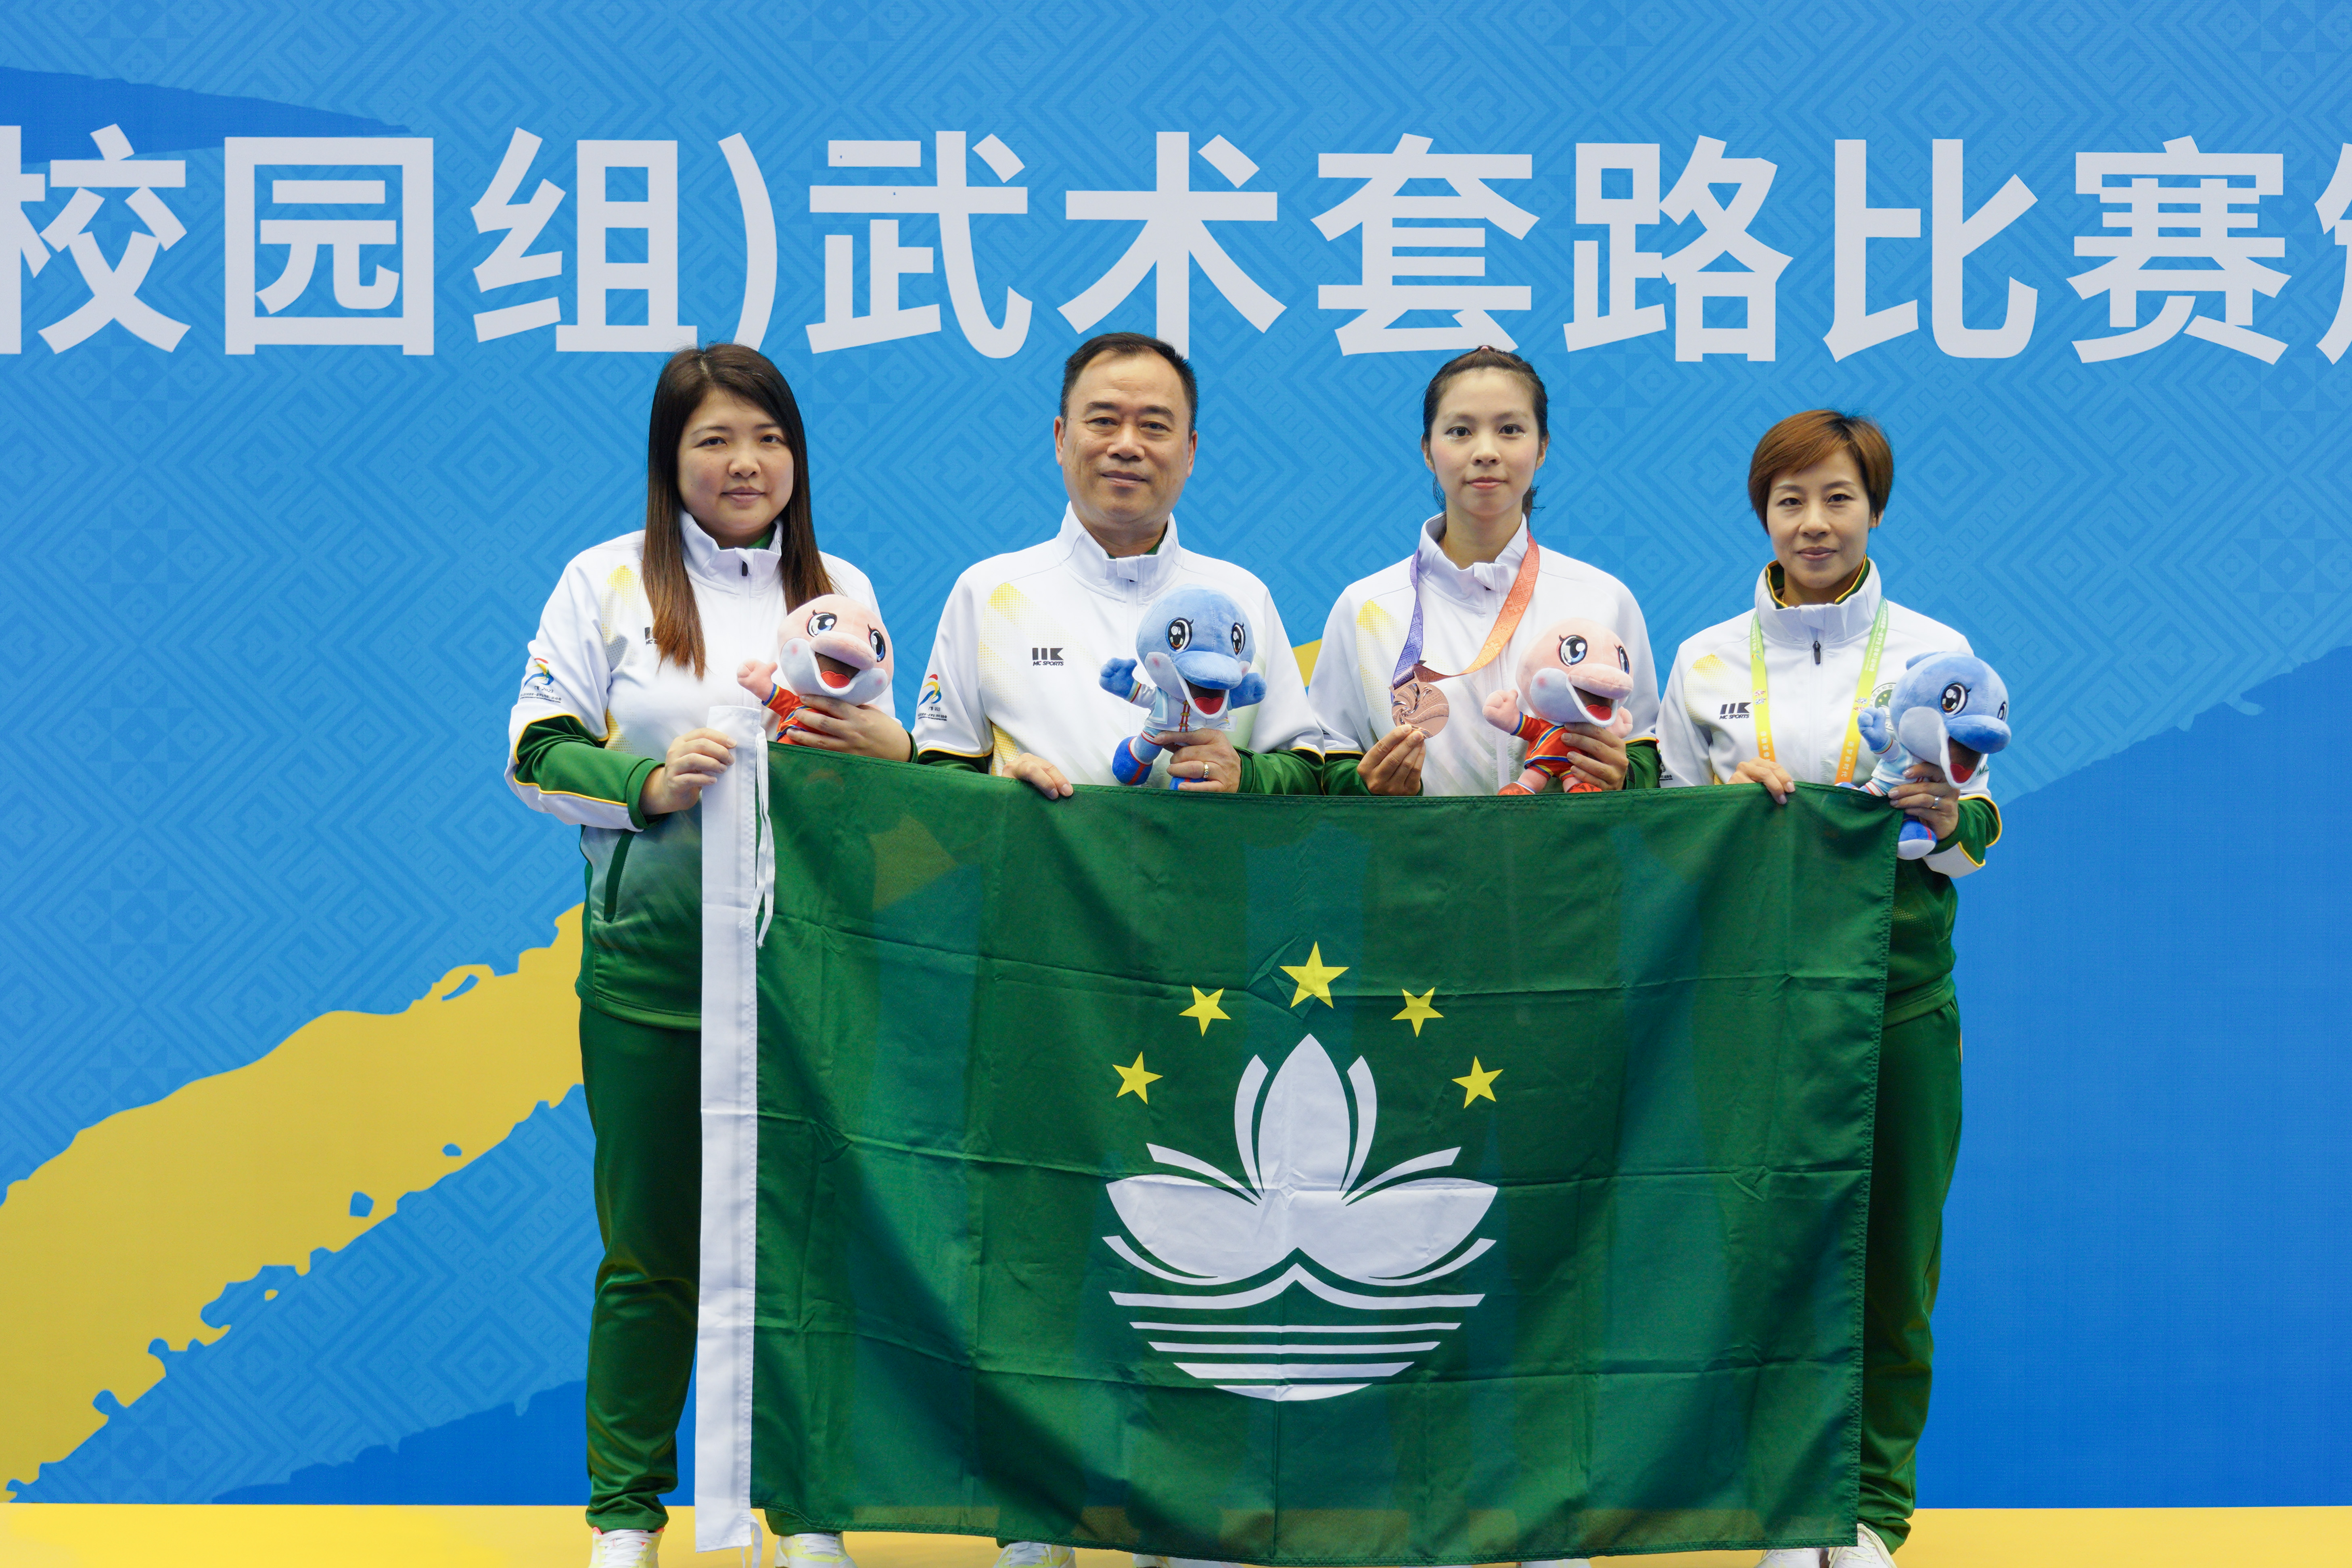 C3 蘇楚雯於大學組女子自選長拳項目比賽取得銅牌.jpg